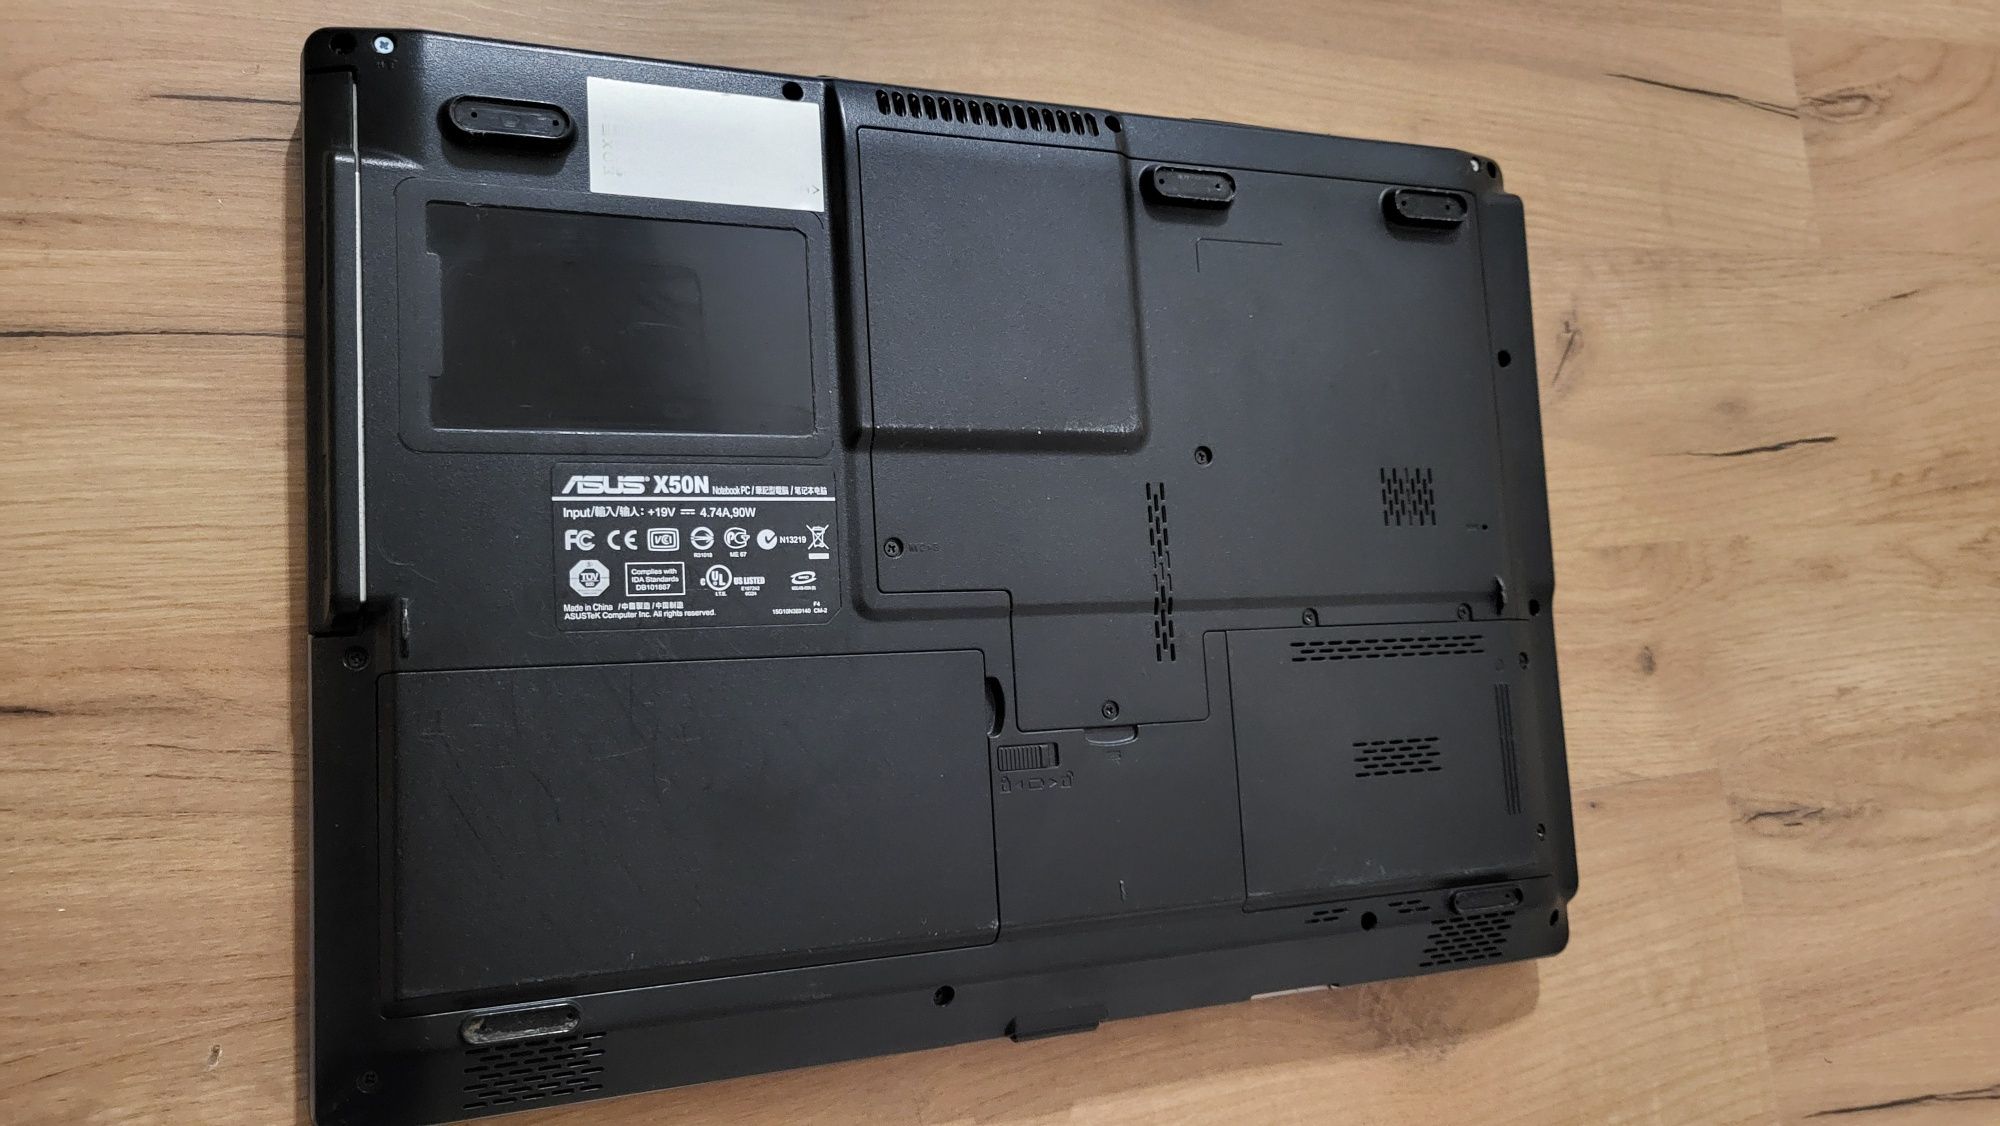 Asus X50N laptop